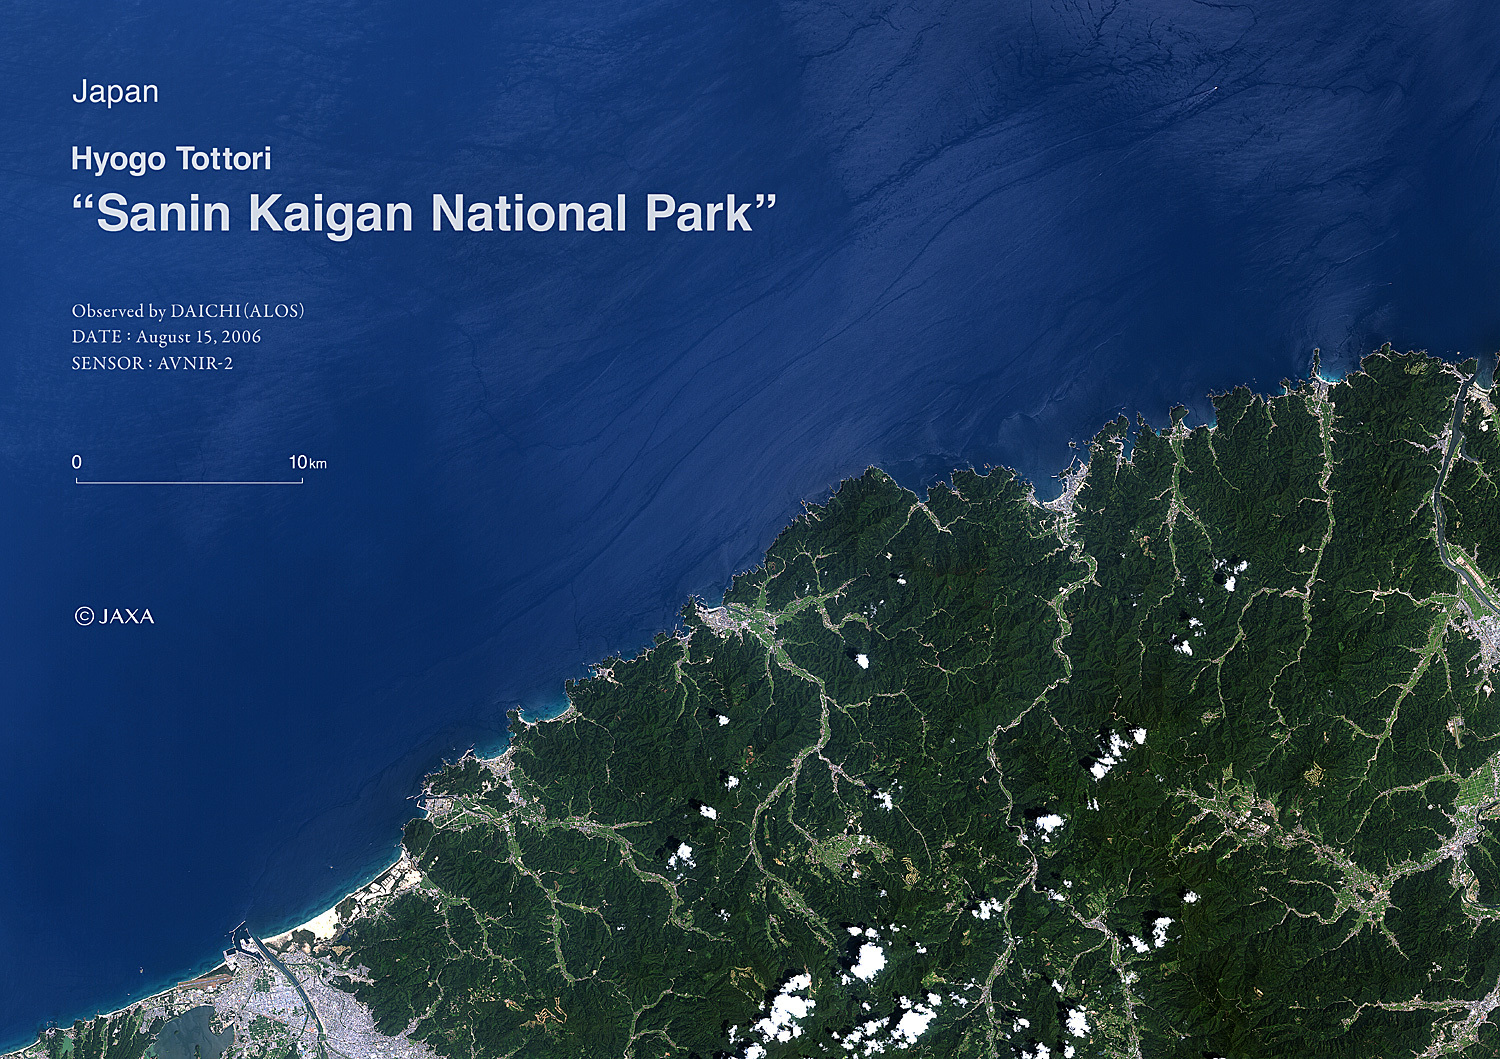 だいちから見た日本の都市 山陰海岸国立公園:衛星画像（ポスター仕上げ）